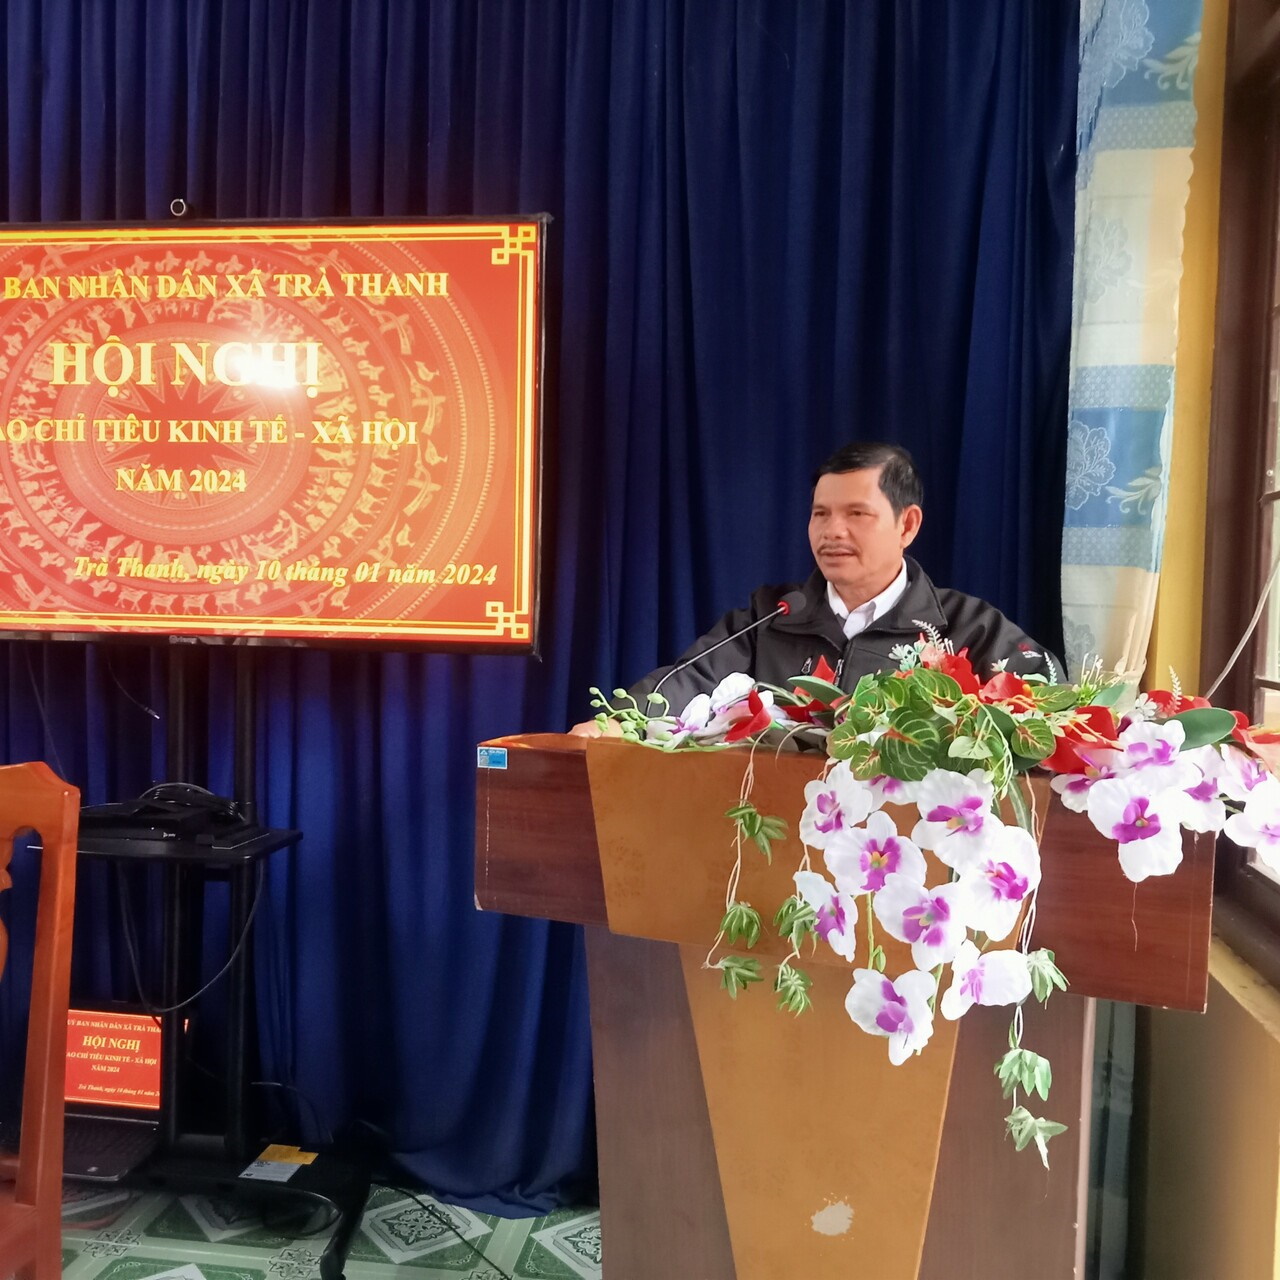 Đồng chí Hồ Thanh Hùng, Bí thư Đảng ủy xã - Chủ tịch HĐND xã, phát biểu chỉ đạo tại hội nghị